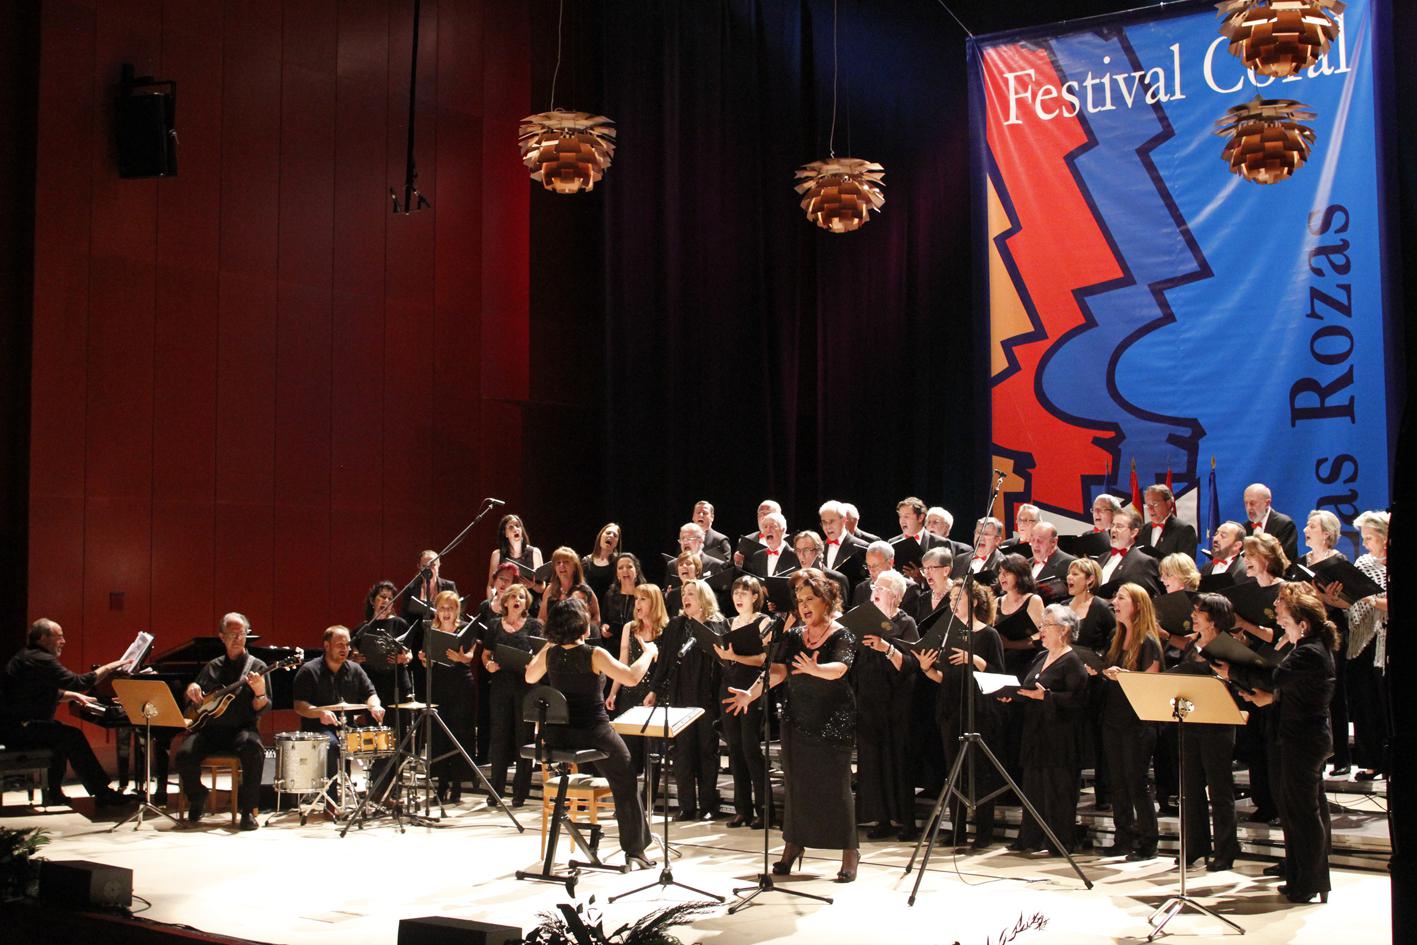 El XV Festival Coral de Las Rozas congrega en el Auditorio a destacados grupos de música vocal